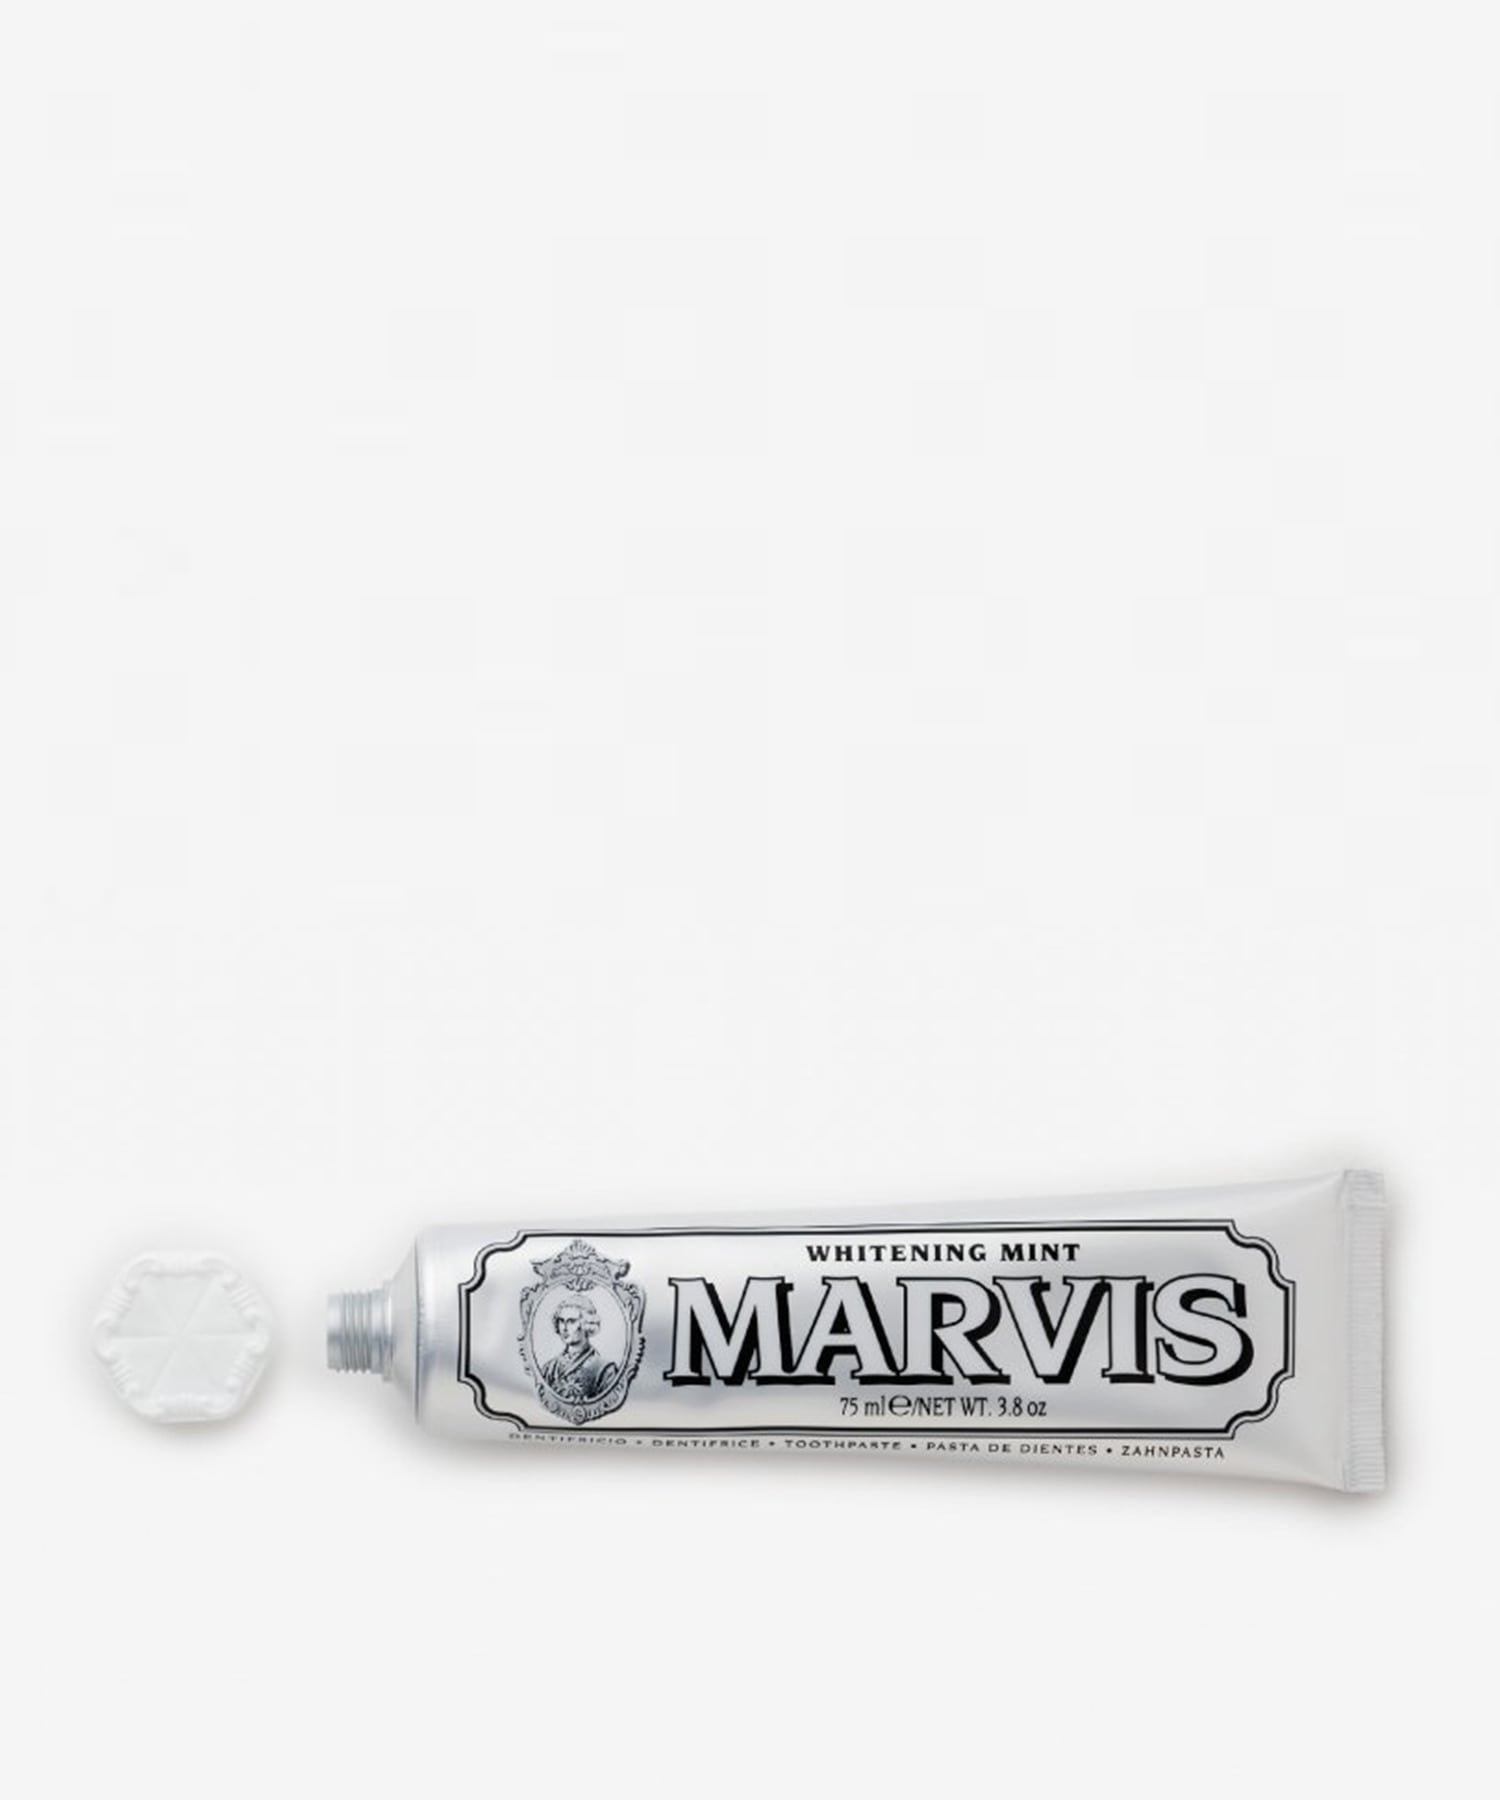 MARVIS / "ホワイト ミント" トゥースペースト 75ml